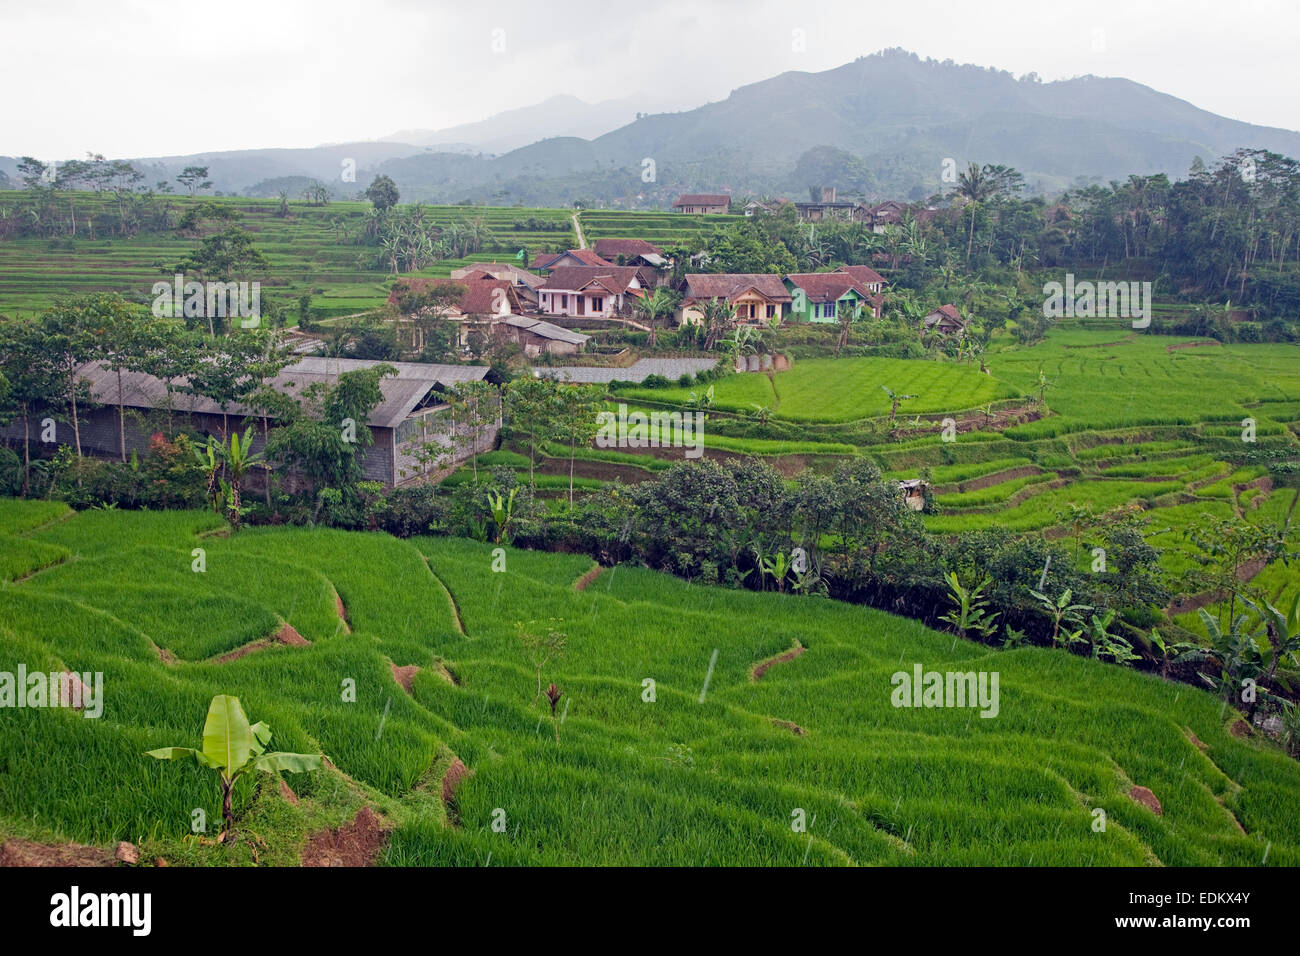 Indonesiano villaggio rurale e le risaie nella stagione delle piogge, Garut Regency, West Java, Indonesia Foto Stock